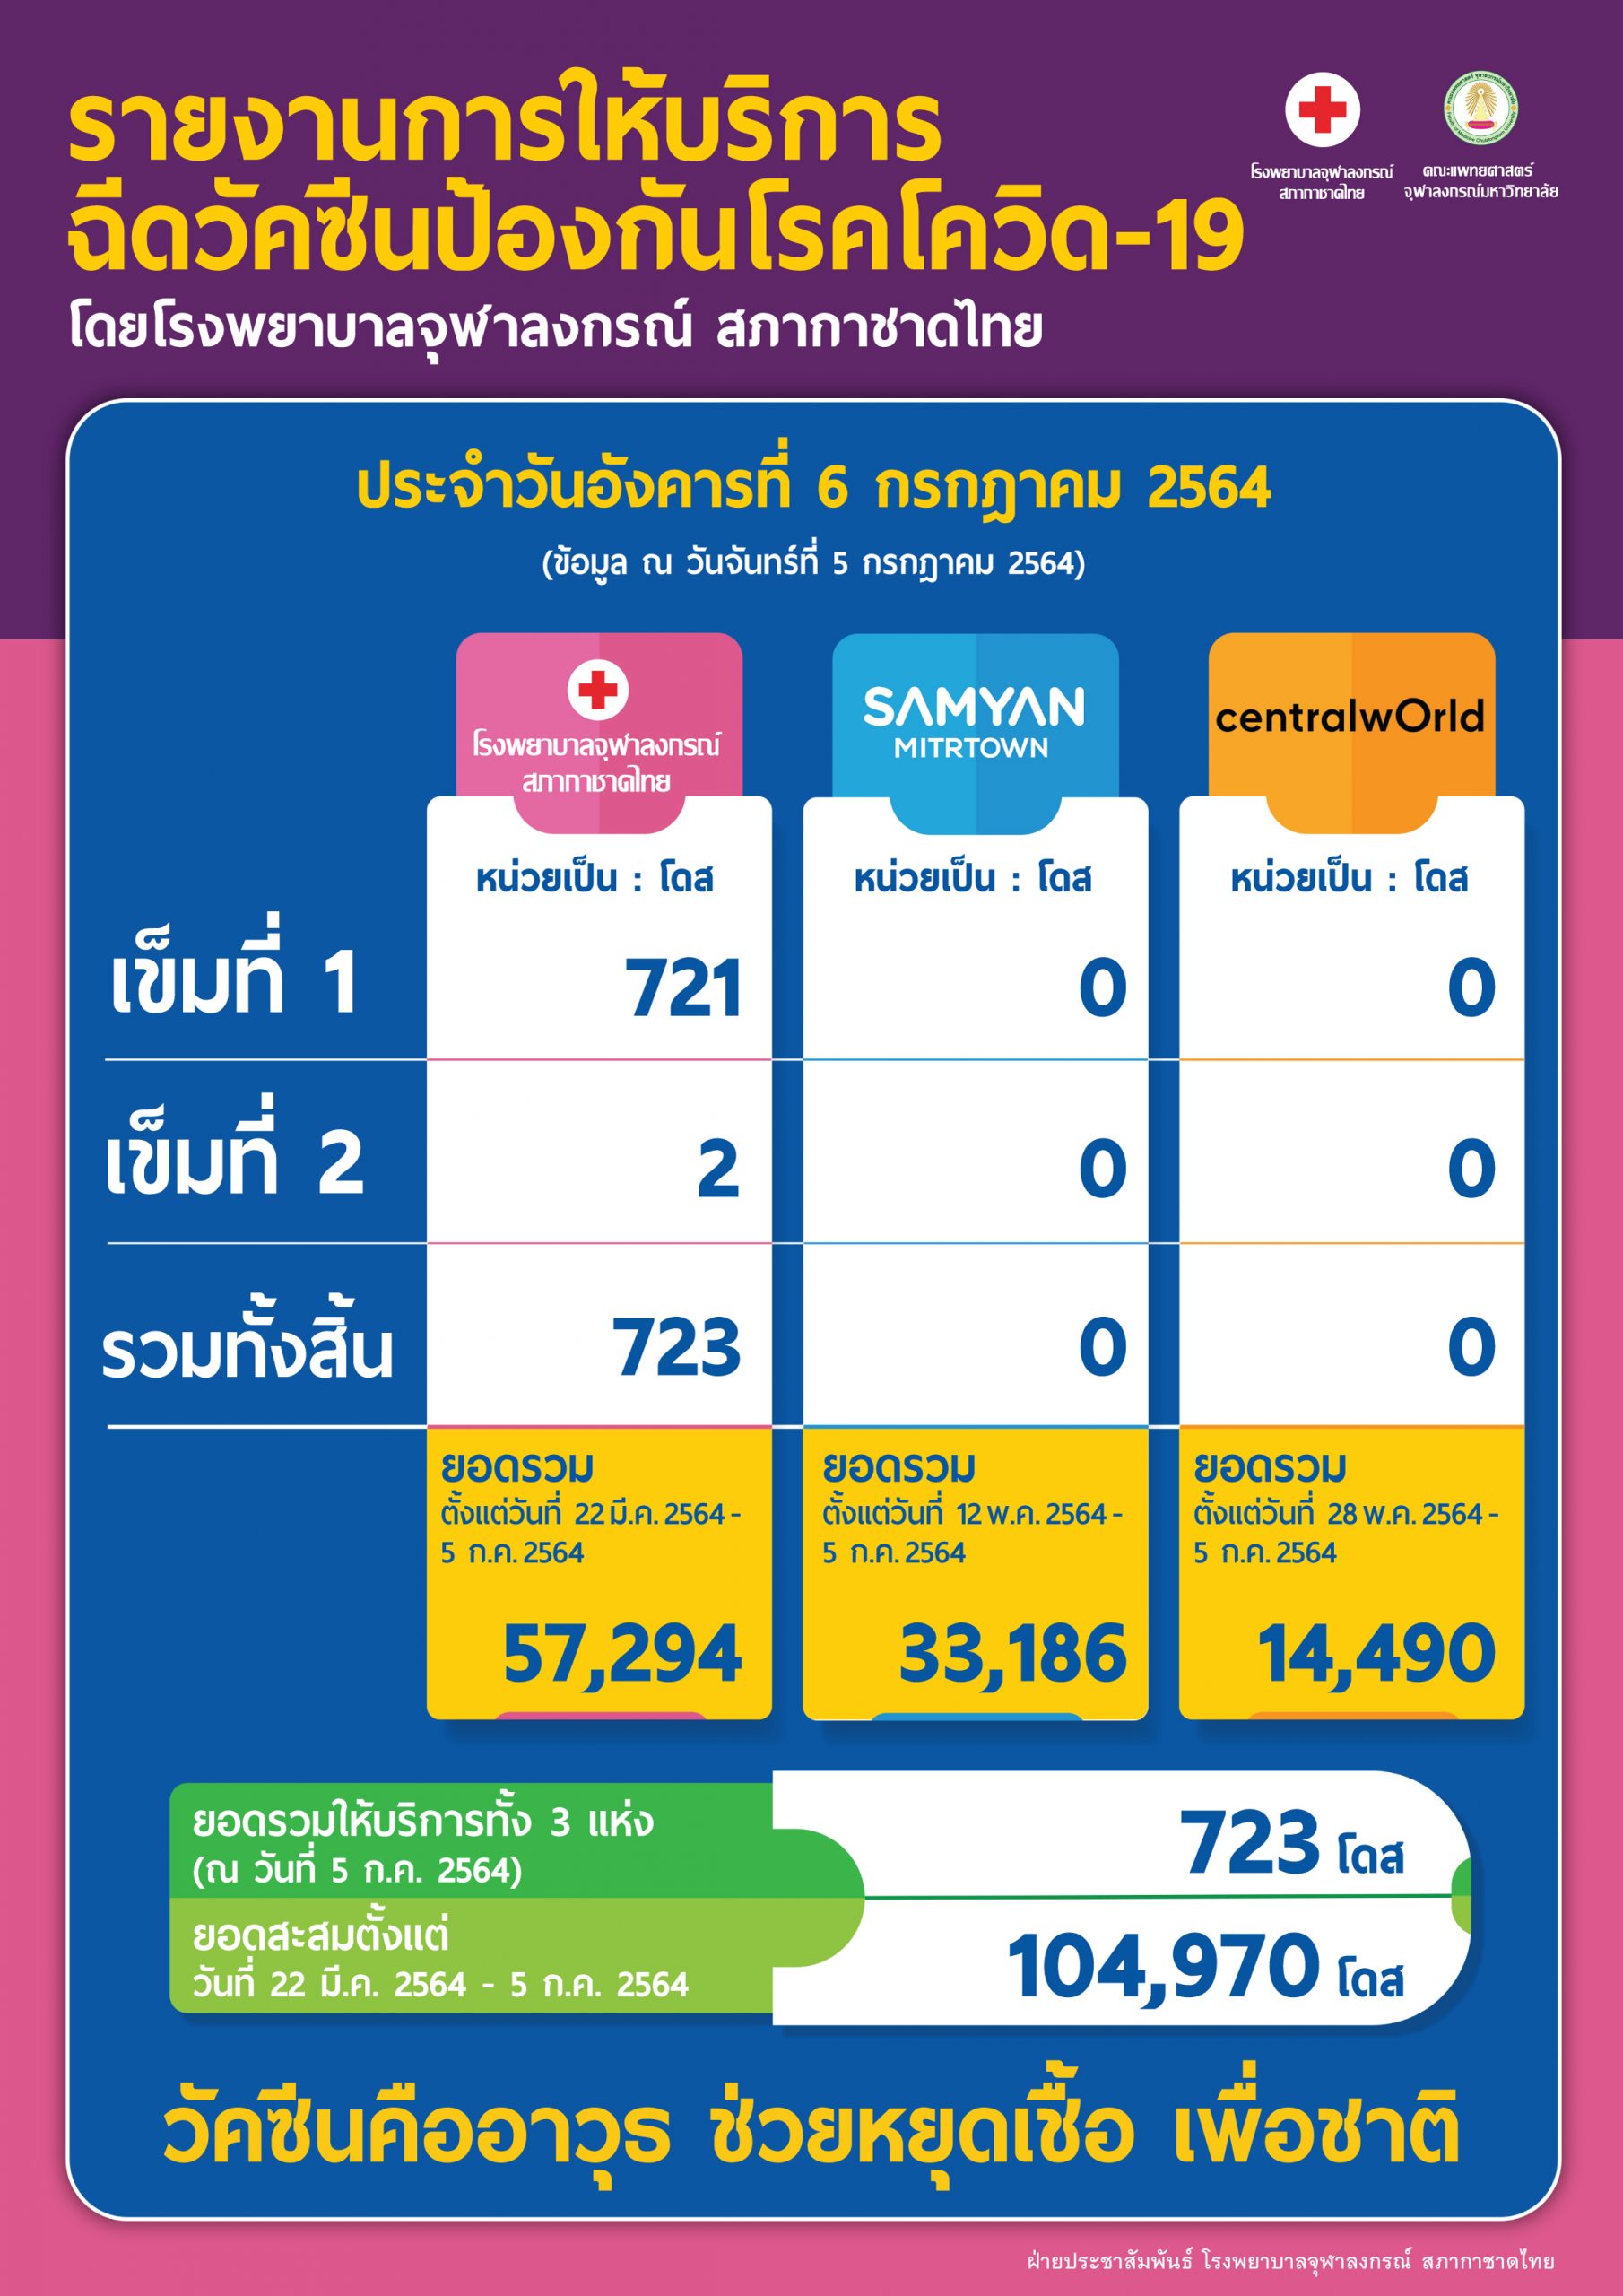 รายงานการให้บริการฉีดวัคซีนป้องกันโรคโควิด-19โดยโรงพยาบาลจุฬาลงกรณ์ สภากาชาดไทย ประจำวันอังคารที่ 6 กรกฎาคม 2564